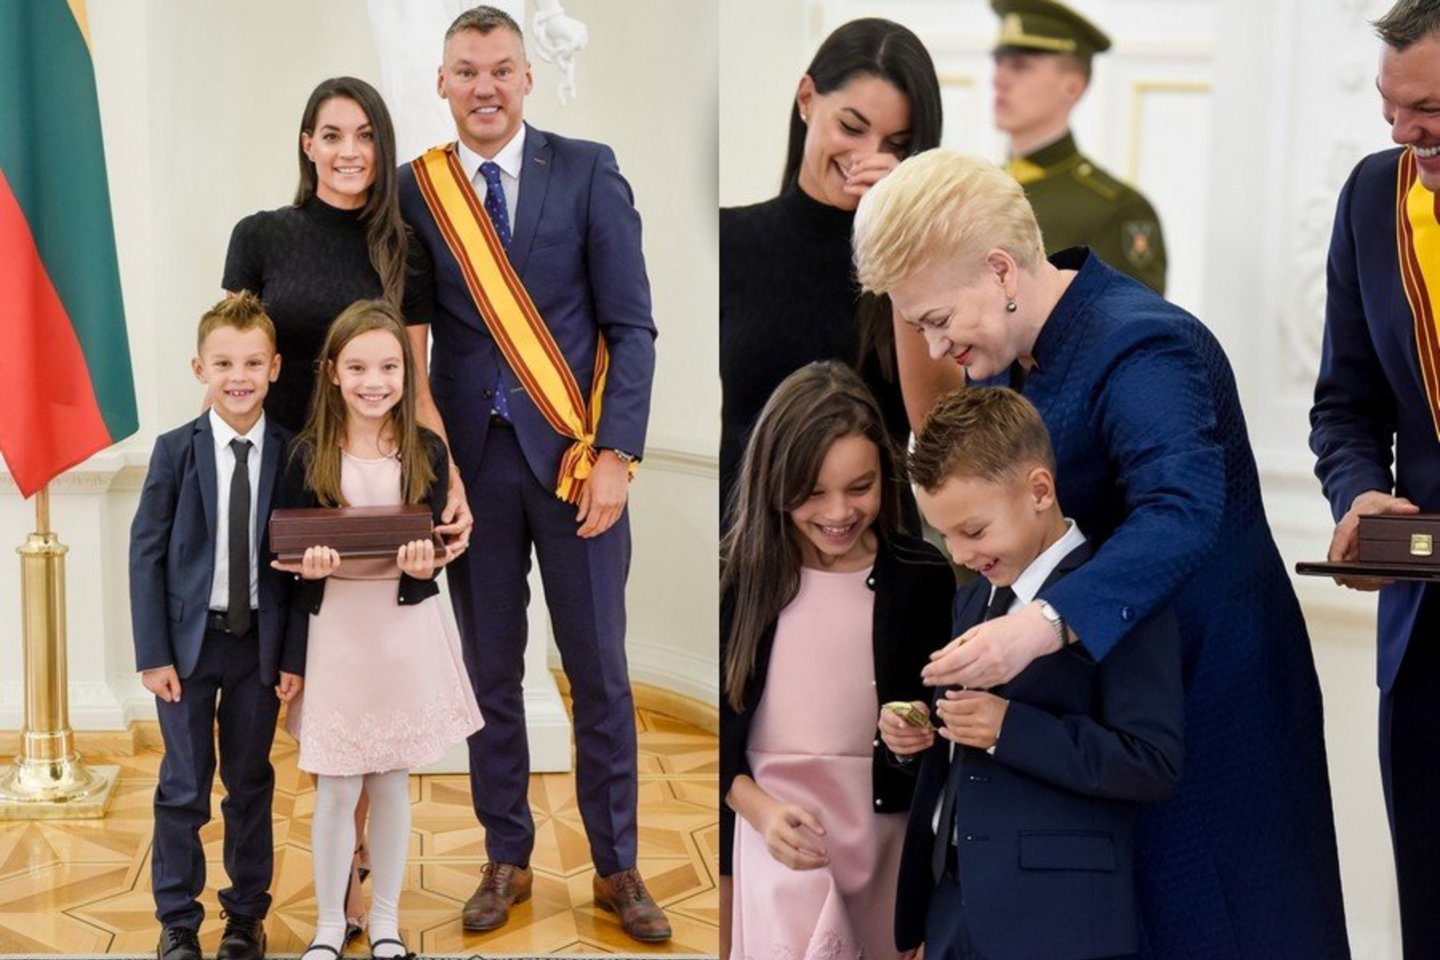   Prezidentė Dalia Grybauskaitė Šarūnui Jasikevičiui įteikė garbingiausią apdovanojimą. Juo džiaugėsi ir šeima: žmona Anna Douka, dukra Aila ir sūnus Lukas.<br> D.Umbraso nuotr.